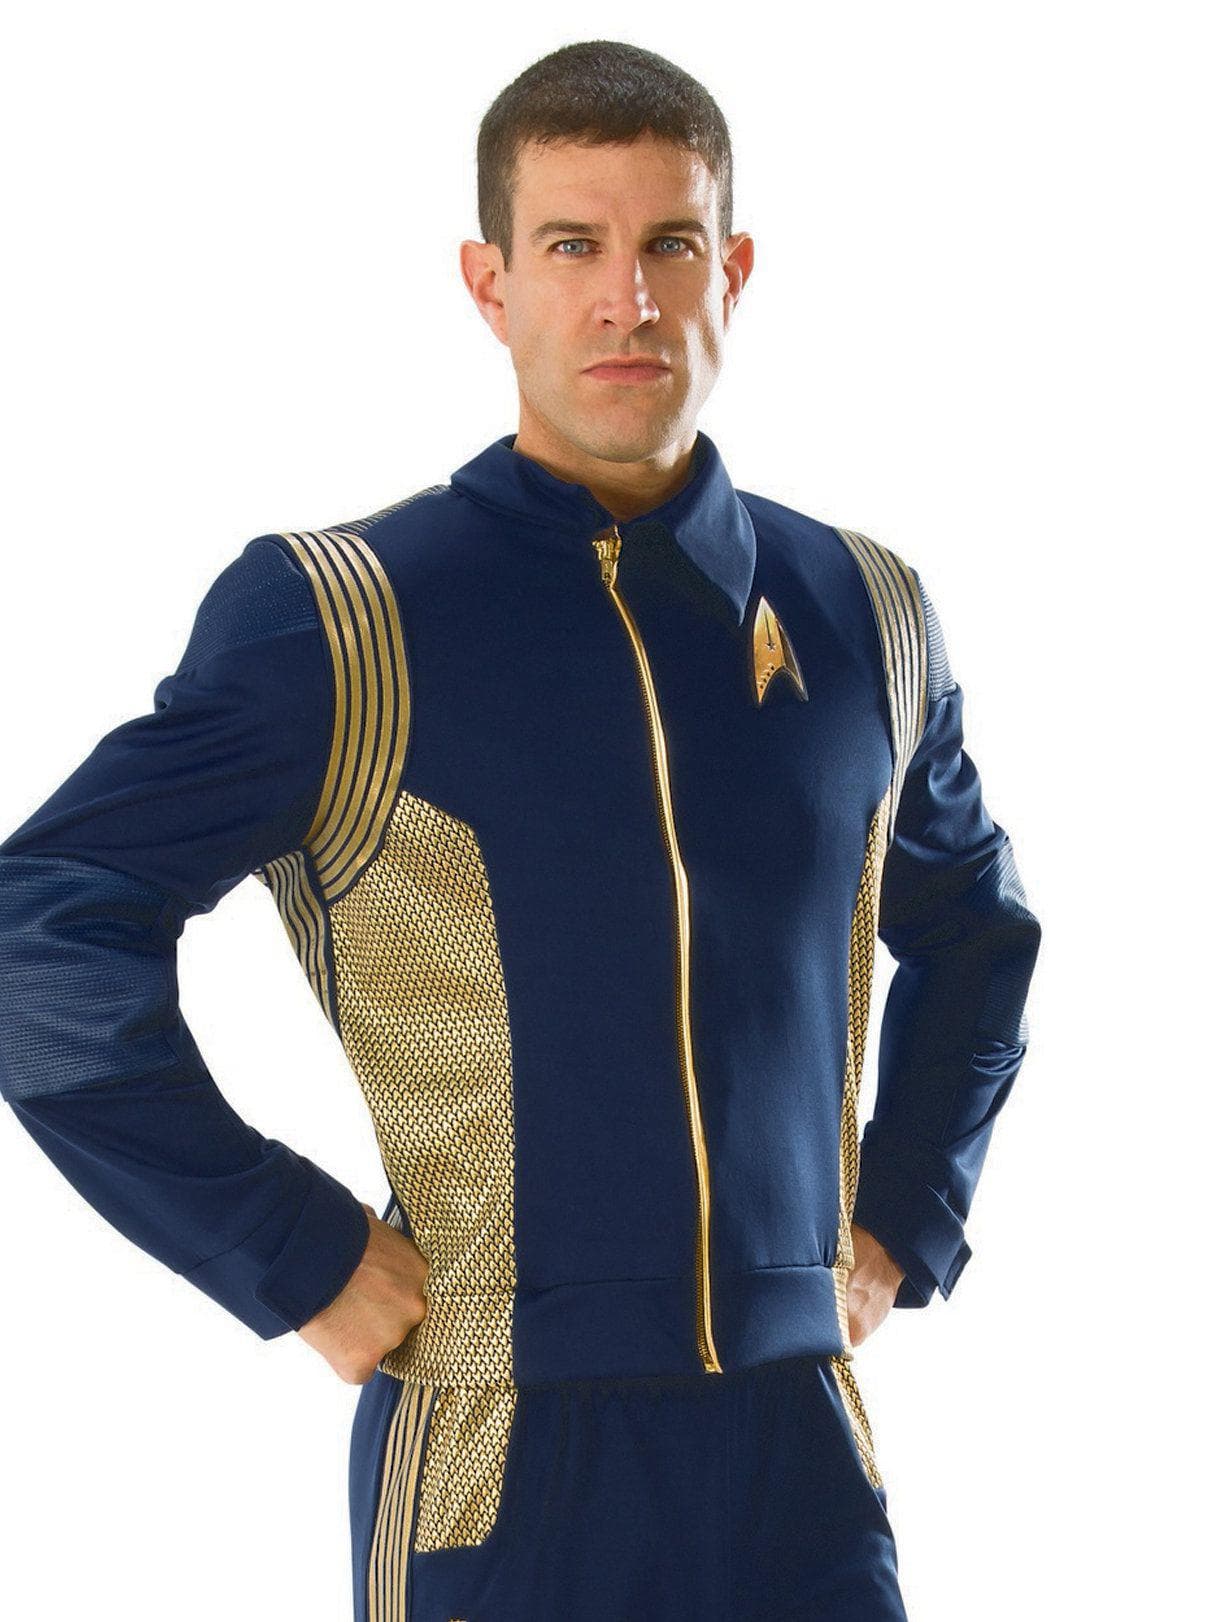 Adult Star Trek Costume - costumes.com